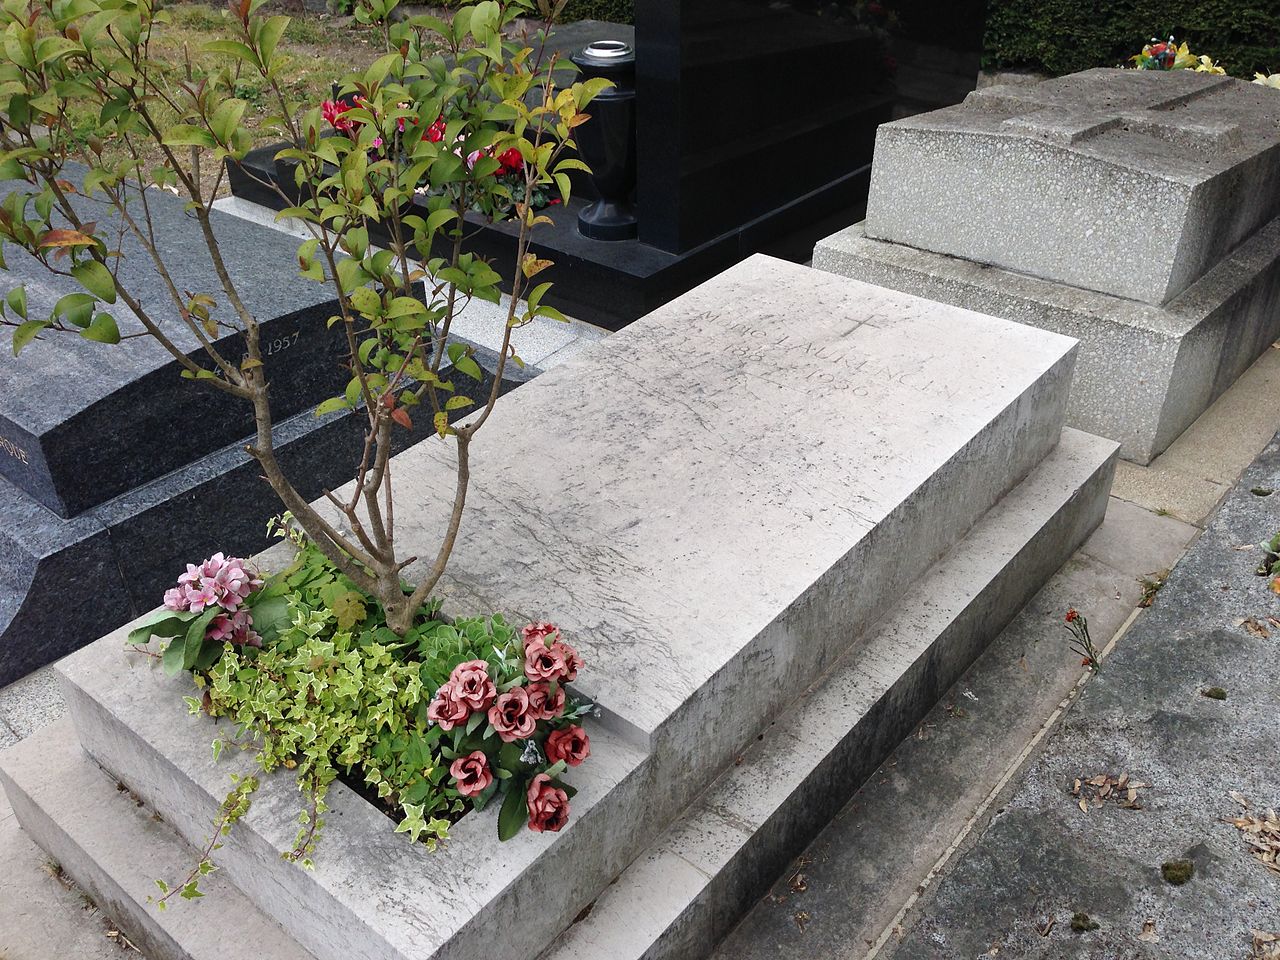 마리 로랑생 무덤 파리 제20구의 페르라셰즈묘지에 있는 마리 로랑생 무덤. 같은 묘지에 아폴리네르도 묻혔다.